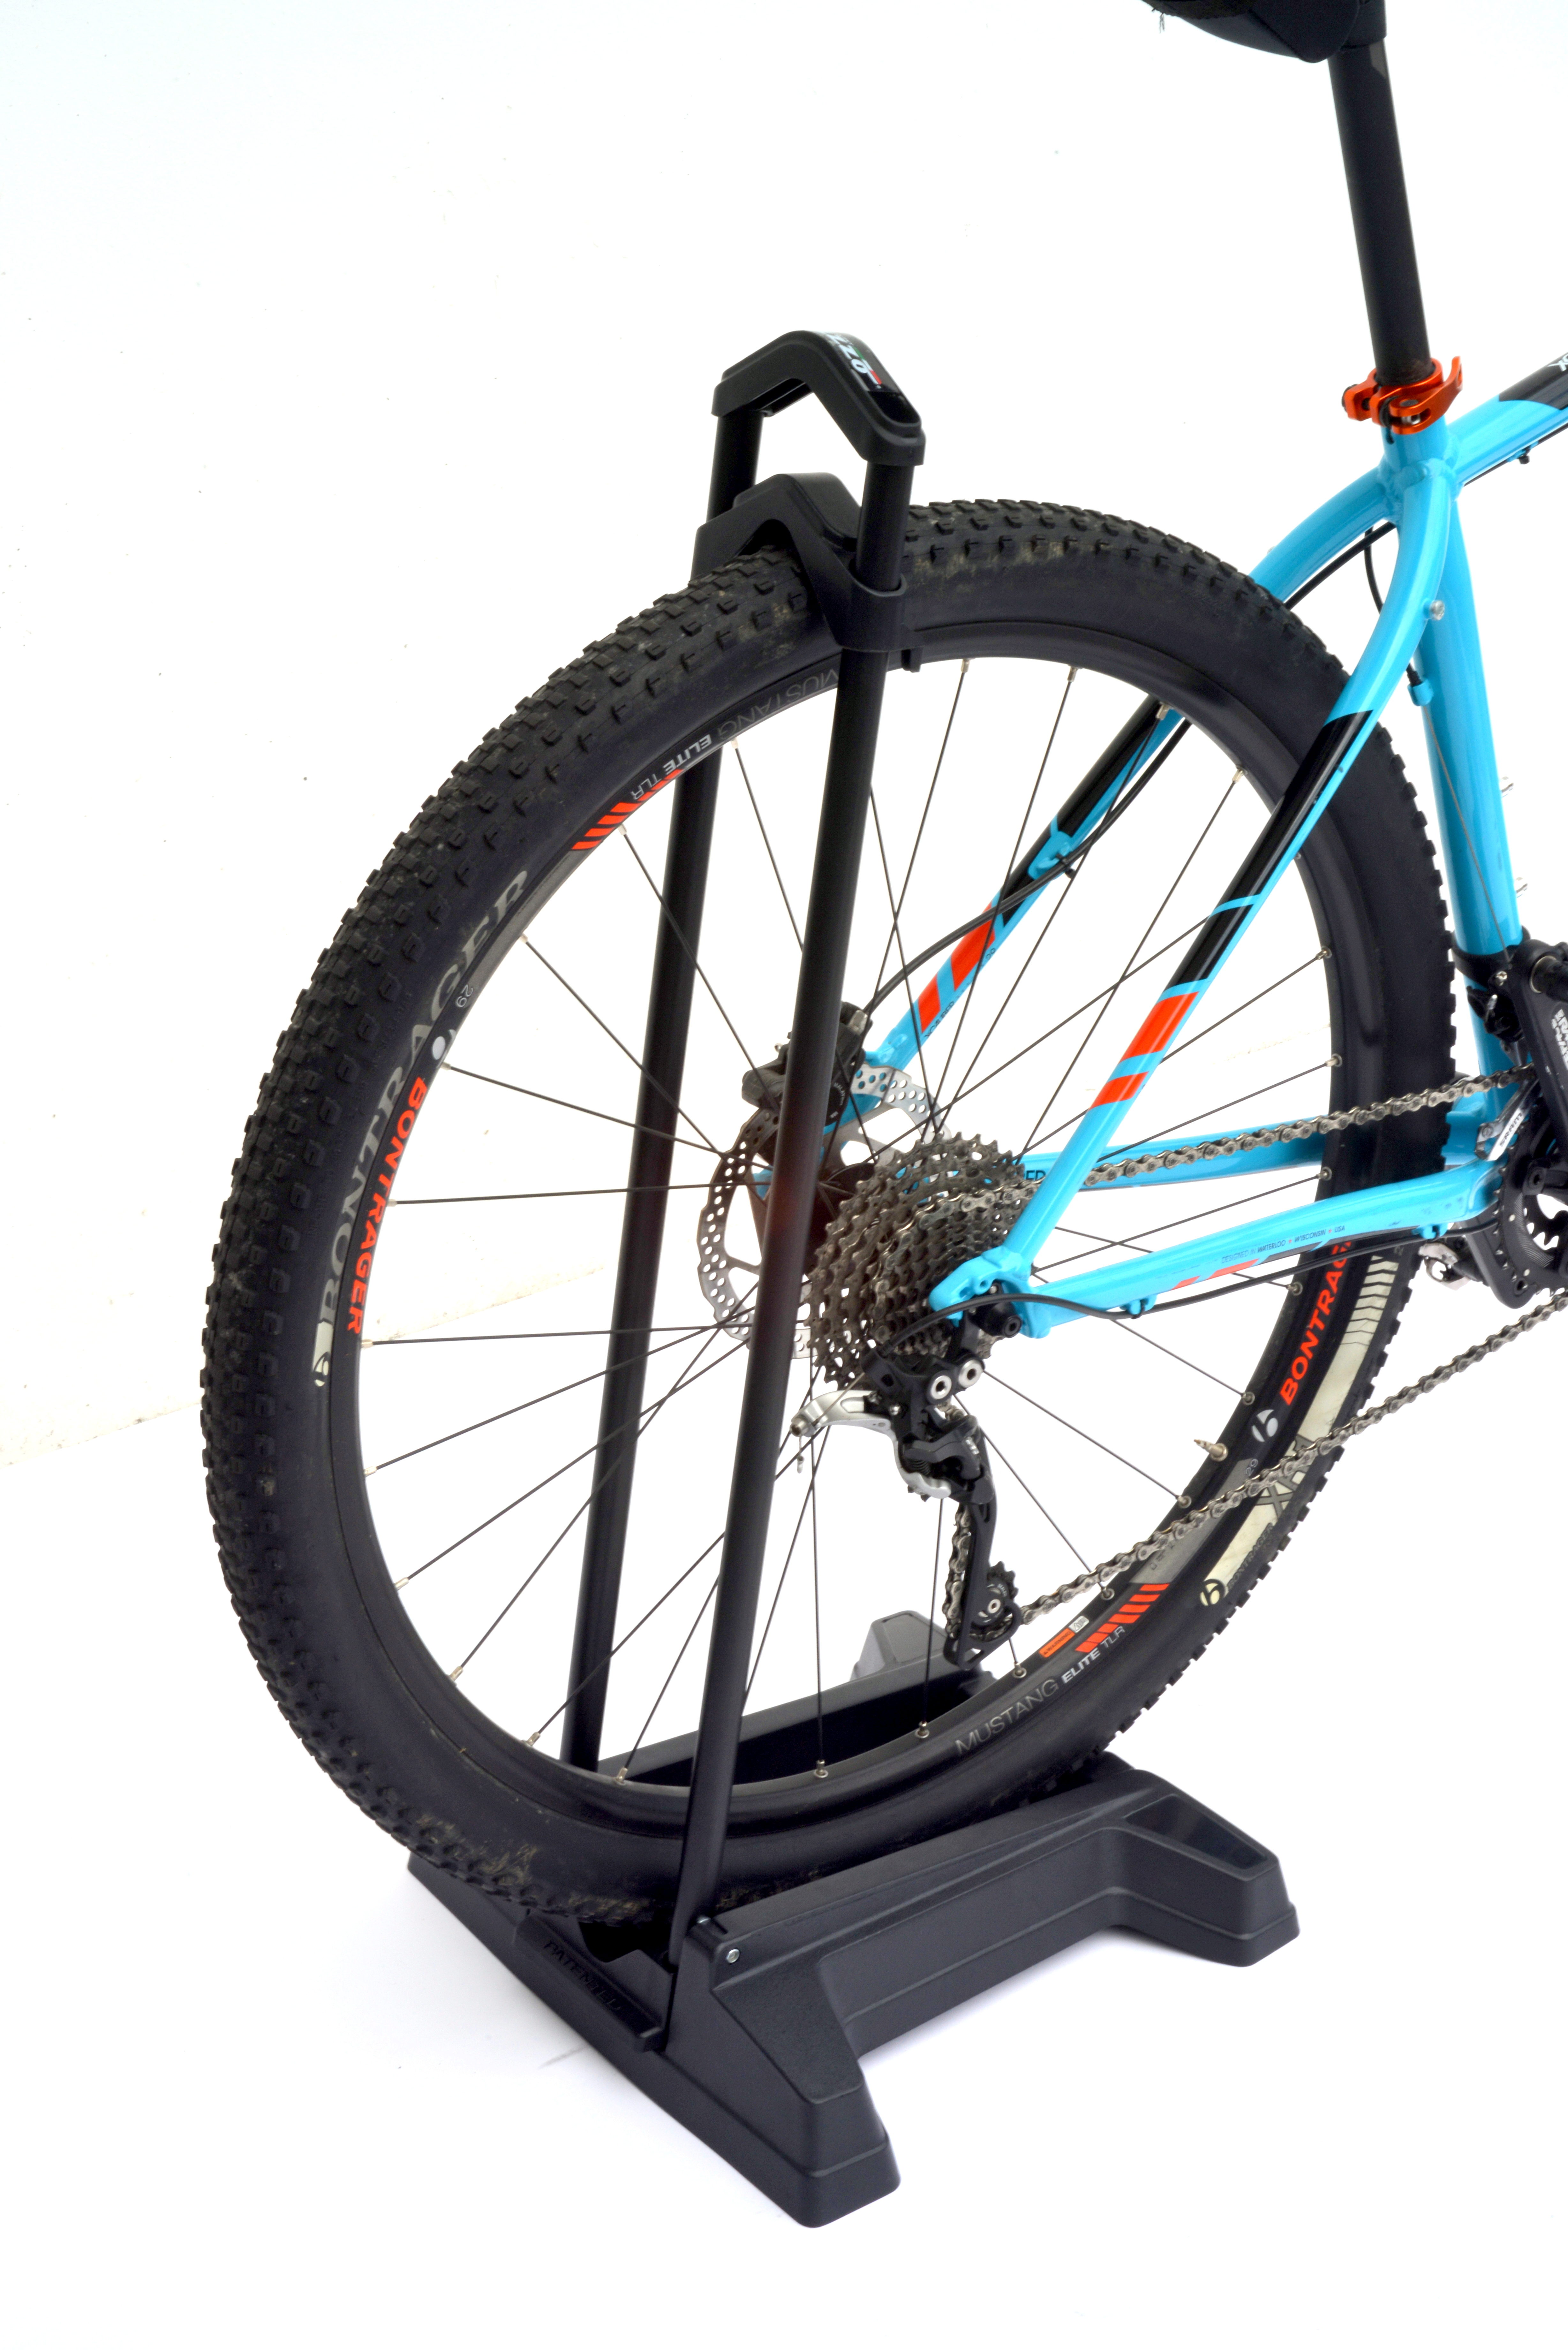 Socle appui des roues de vélo pour le transport sur porte vélo Peruzzo